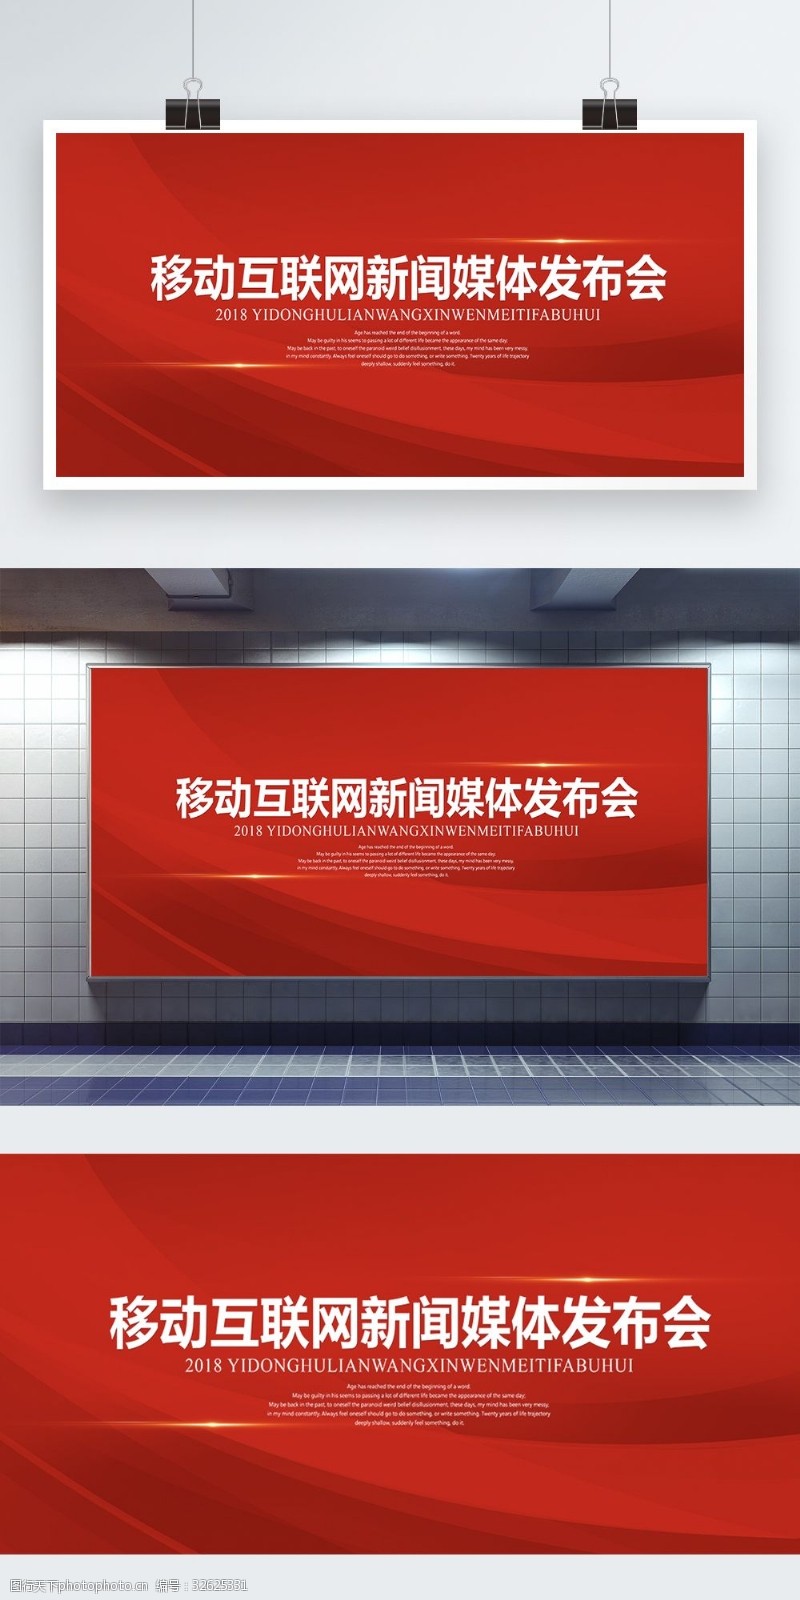 红色科技背景红色大气互联网企业新闻发布会展板